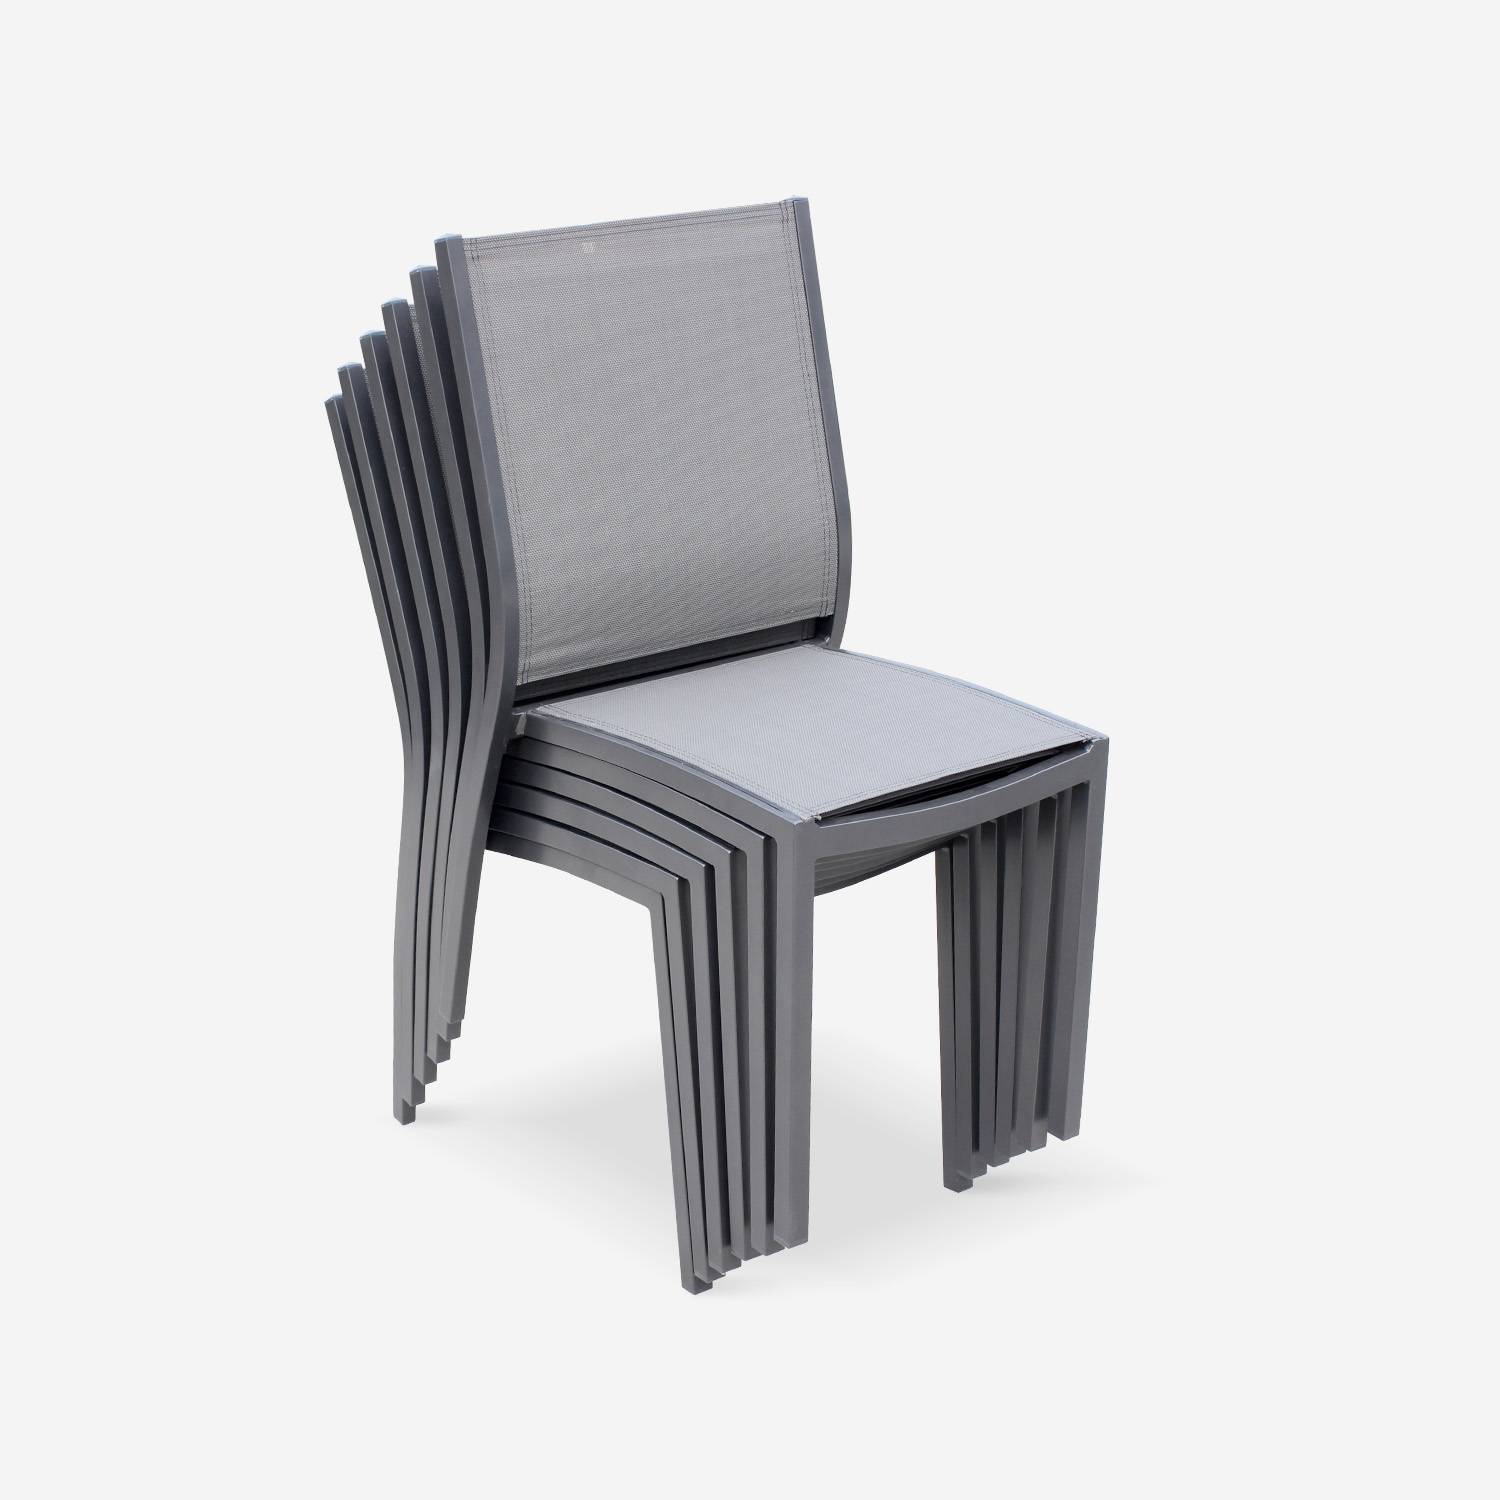 2er Set Gartenstühle - ORLANDO Farbe Anthrazit / Dunkelgrau - Gestell aus Aluminum, Sitz aus Textilene, stapelbar Photo2